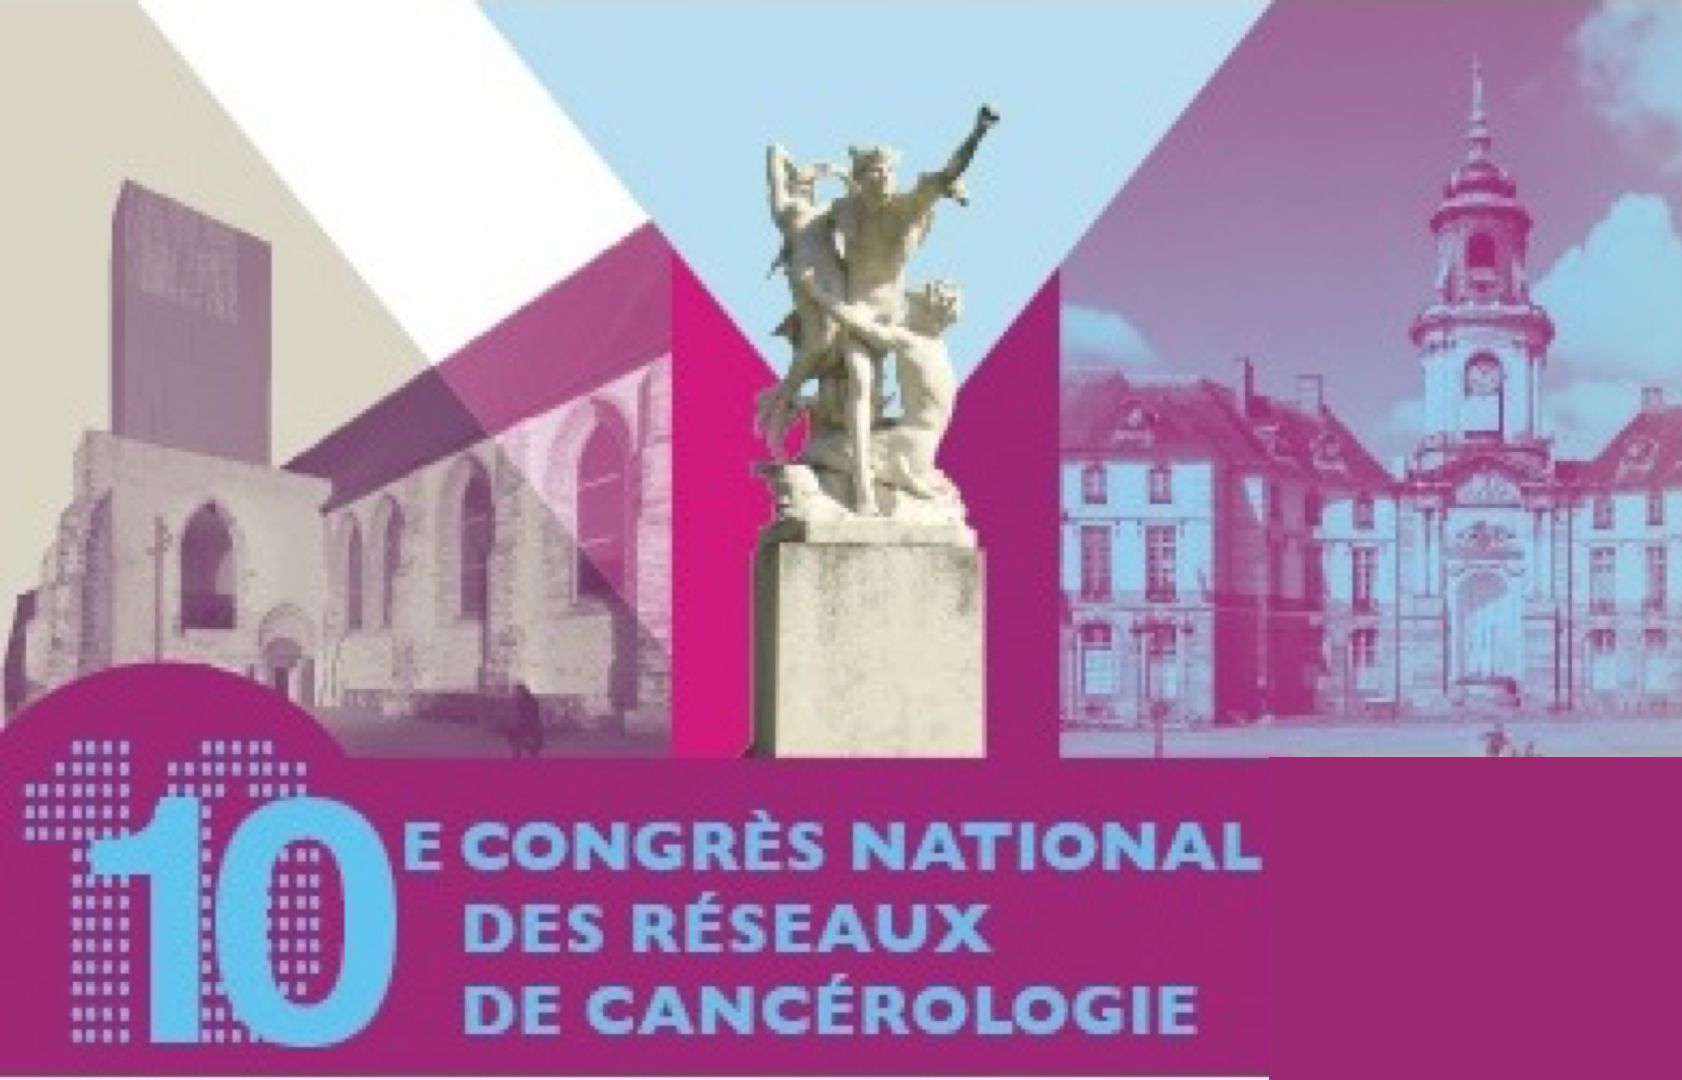 10e Congrès National des Réseaux de Cancérologie à Rennes